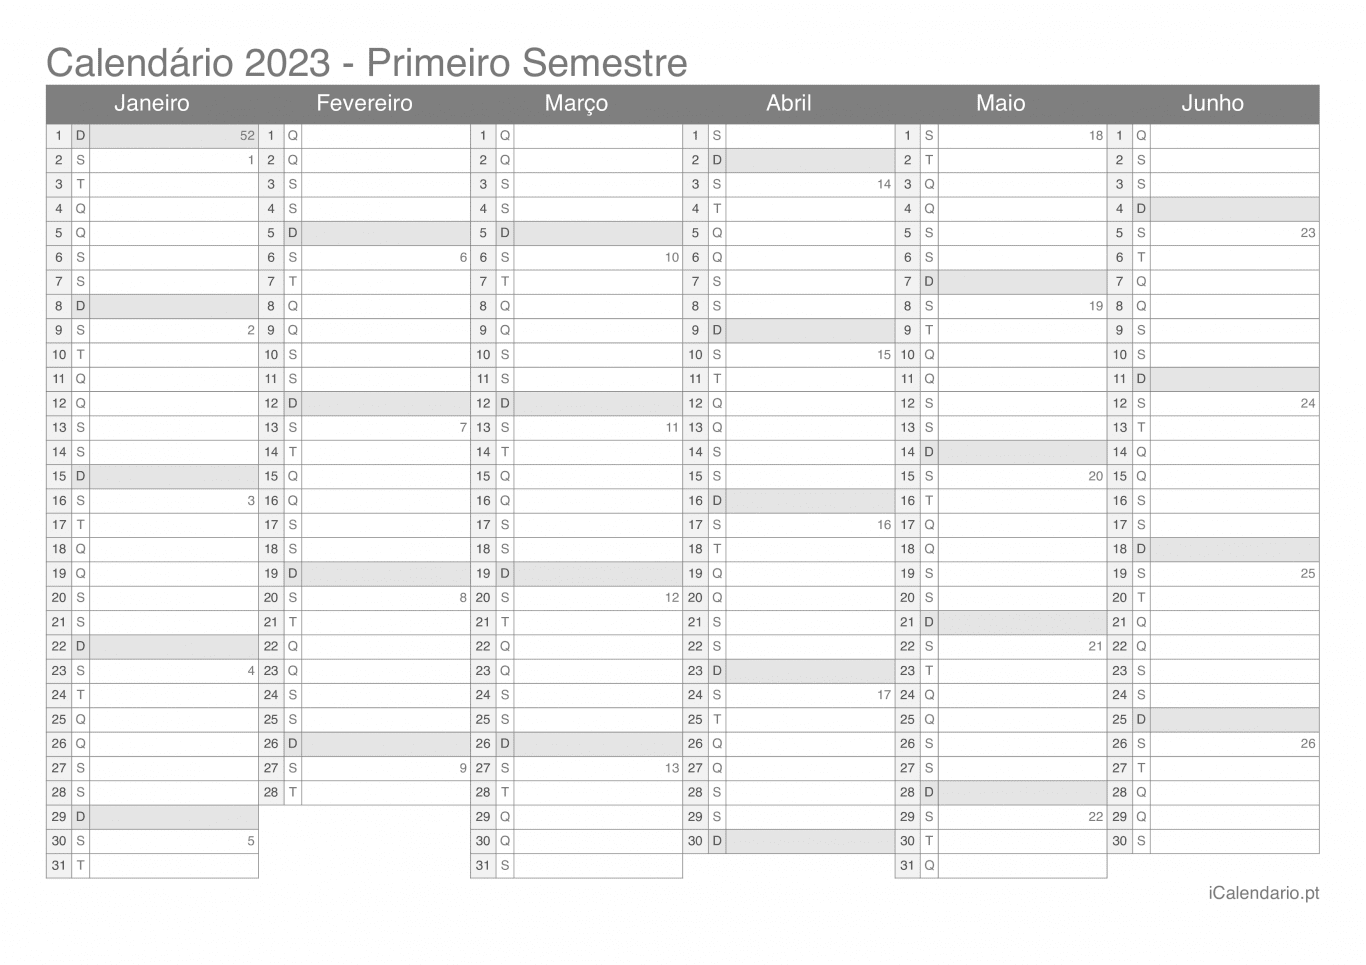 Calendário por semestre com números da semana 2023